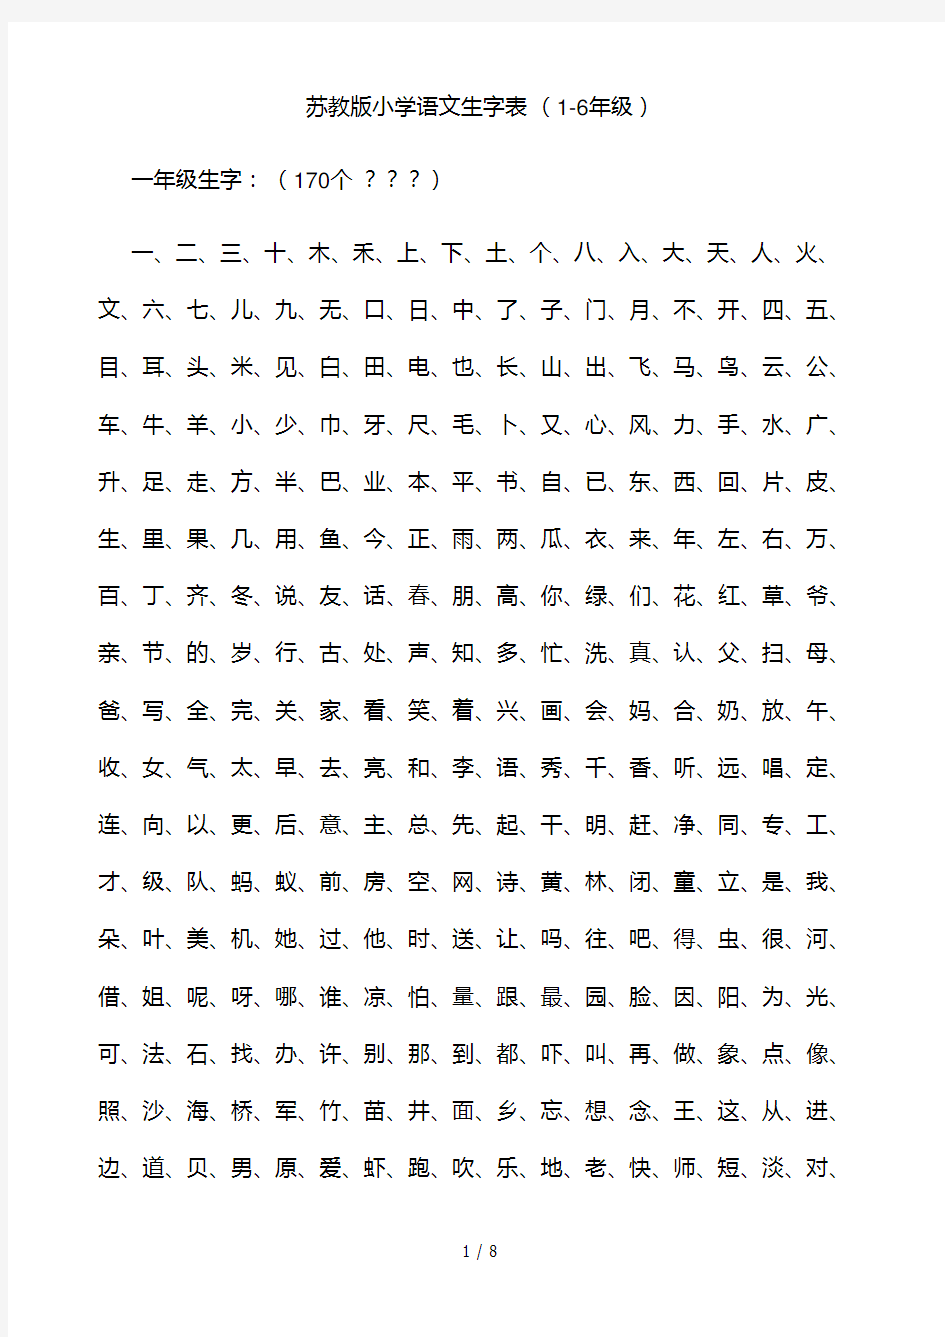 苏教版小学语文生字表-(1-6年级)